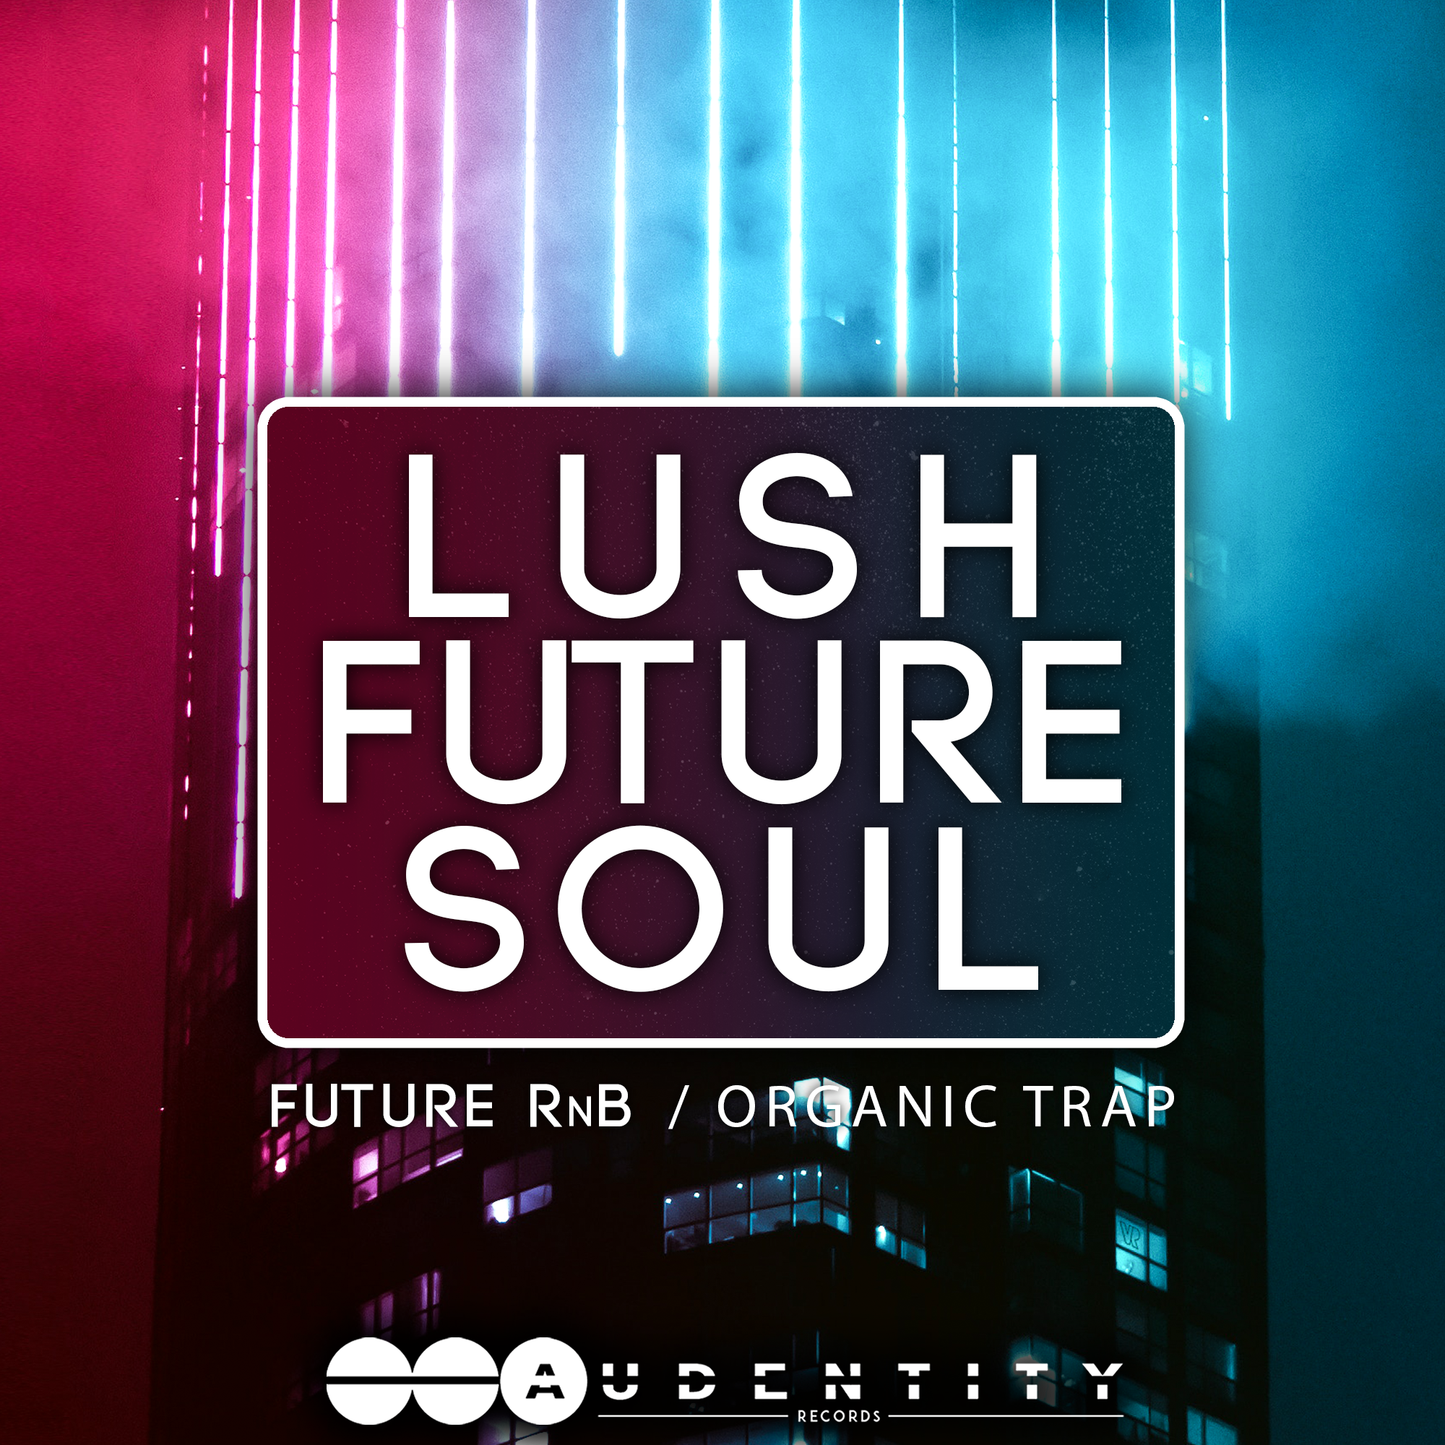 Lush Future Soul